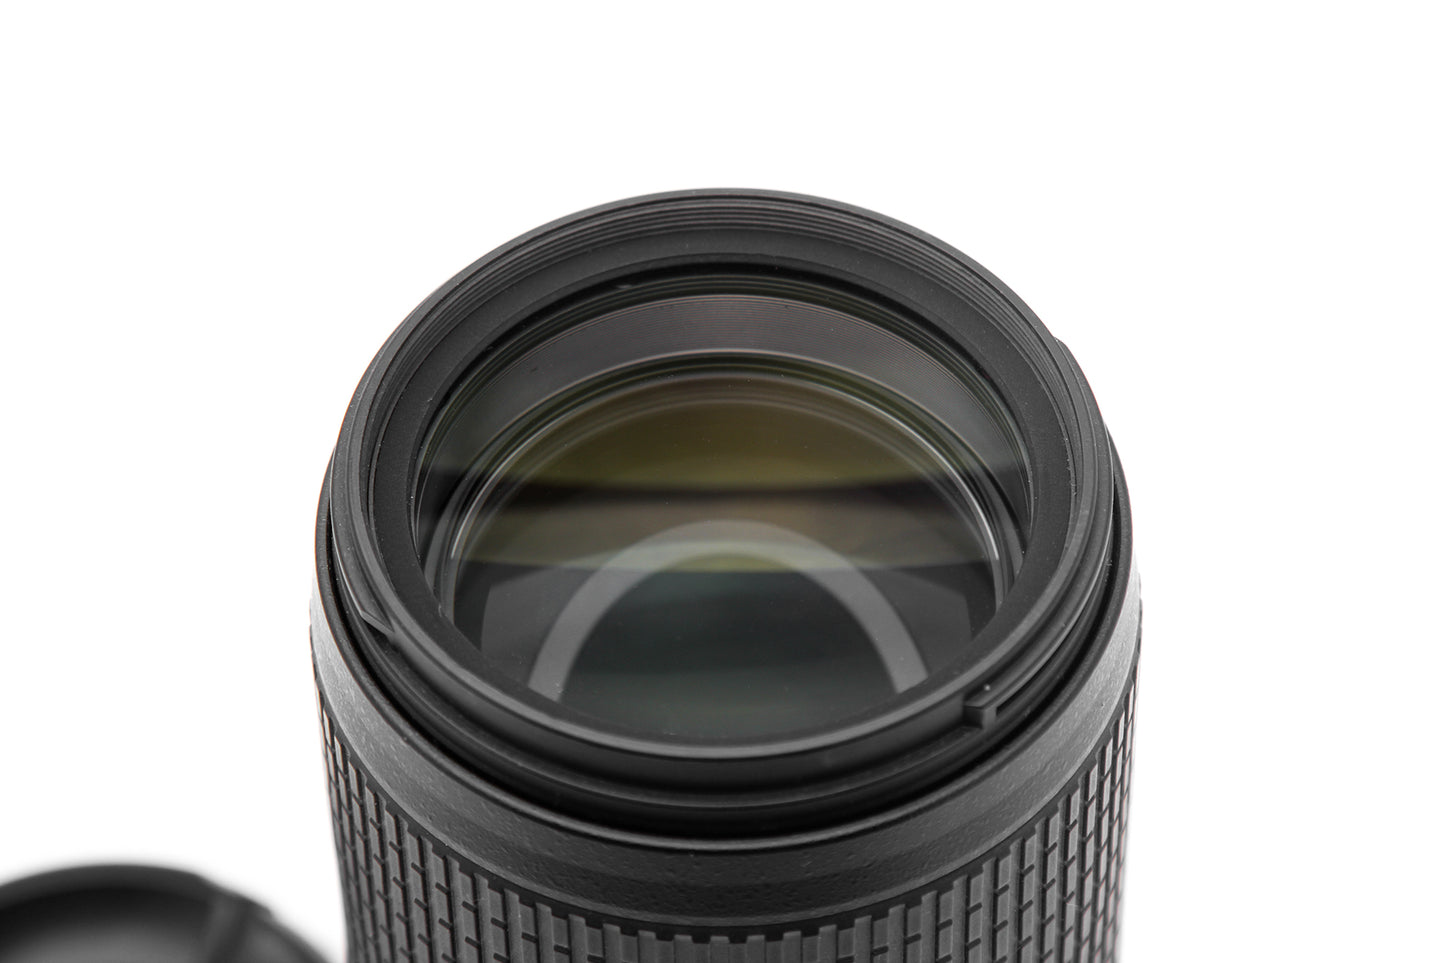 Used Nikon 70-300mm f/4.5-5.6 G VR Zoom Lens